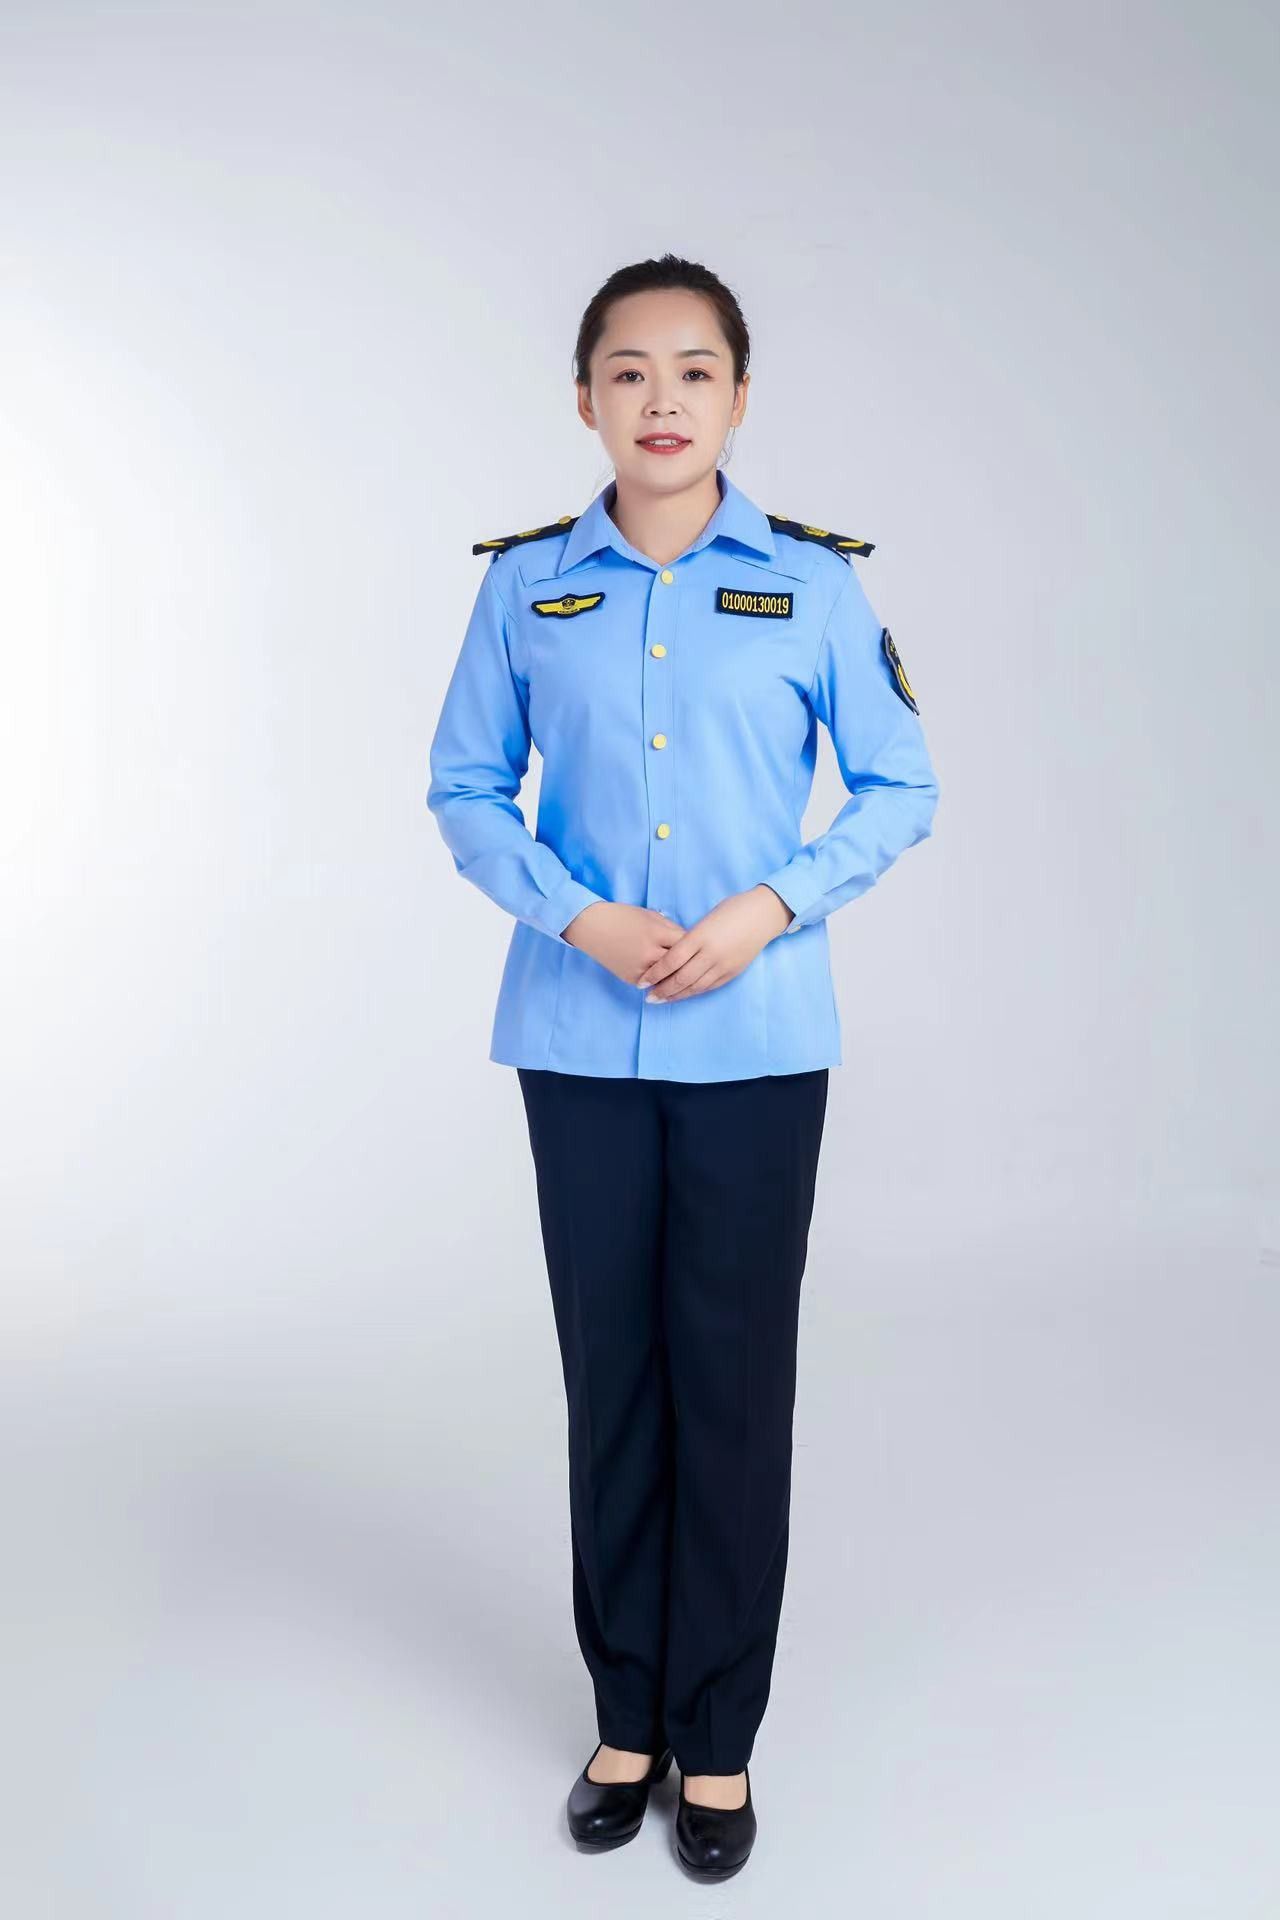 南京执法部门制服